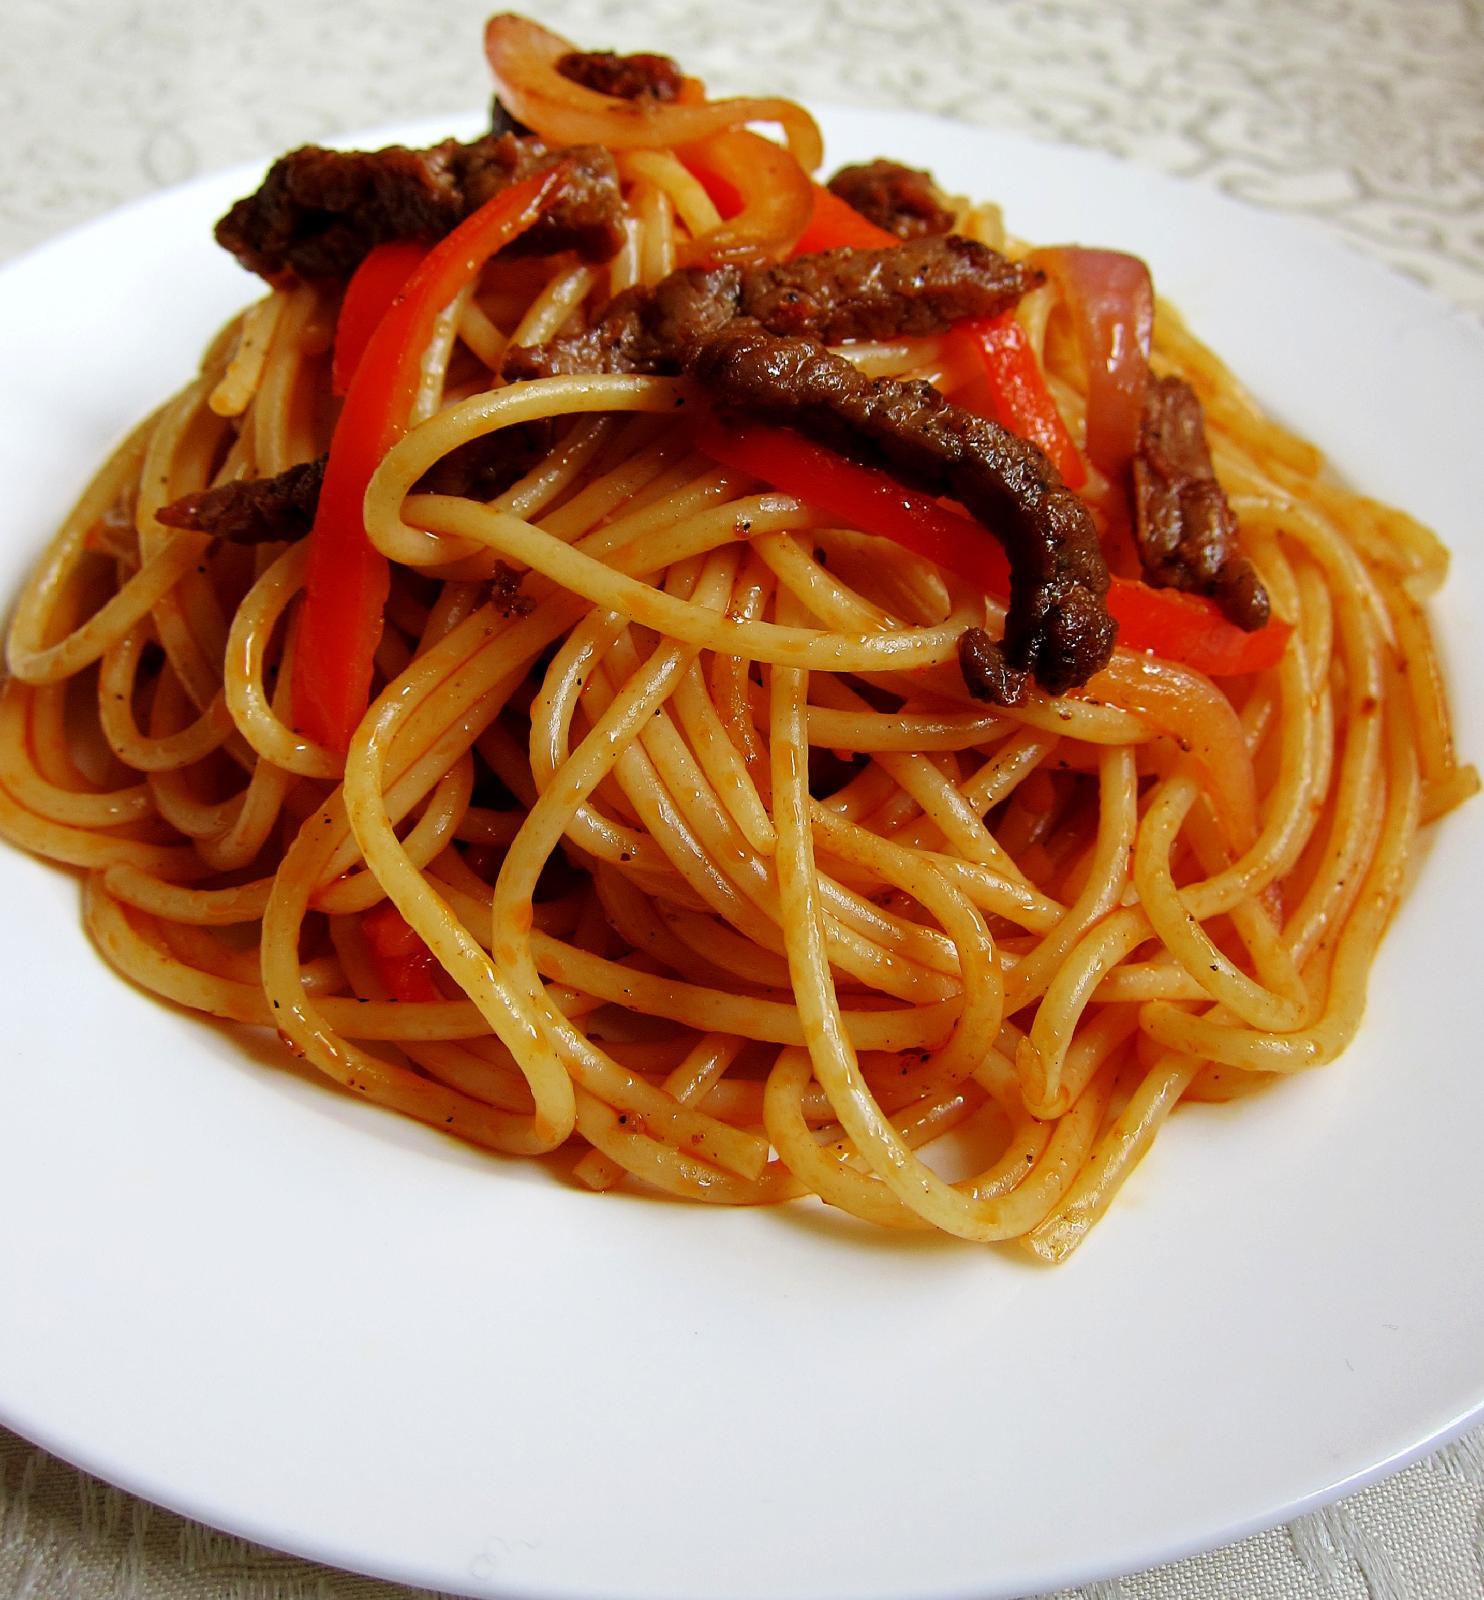 意大利面,又称之为意粉,是西餐品种中最接近中国人饮食习惯,最容易被